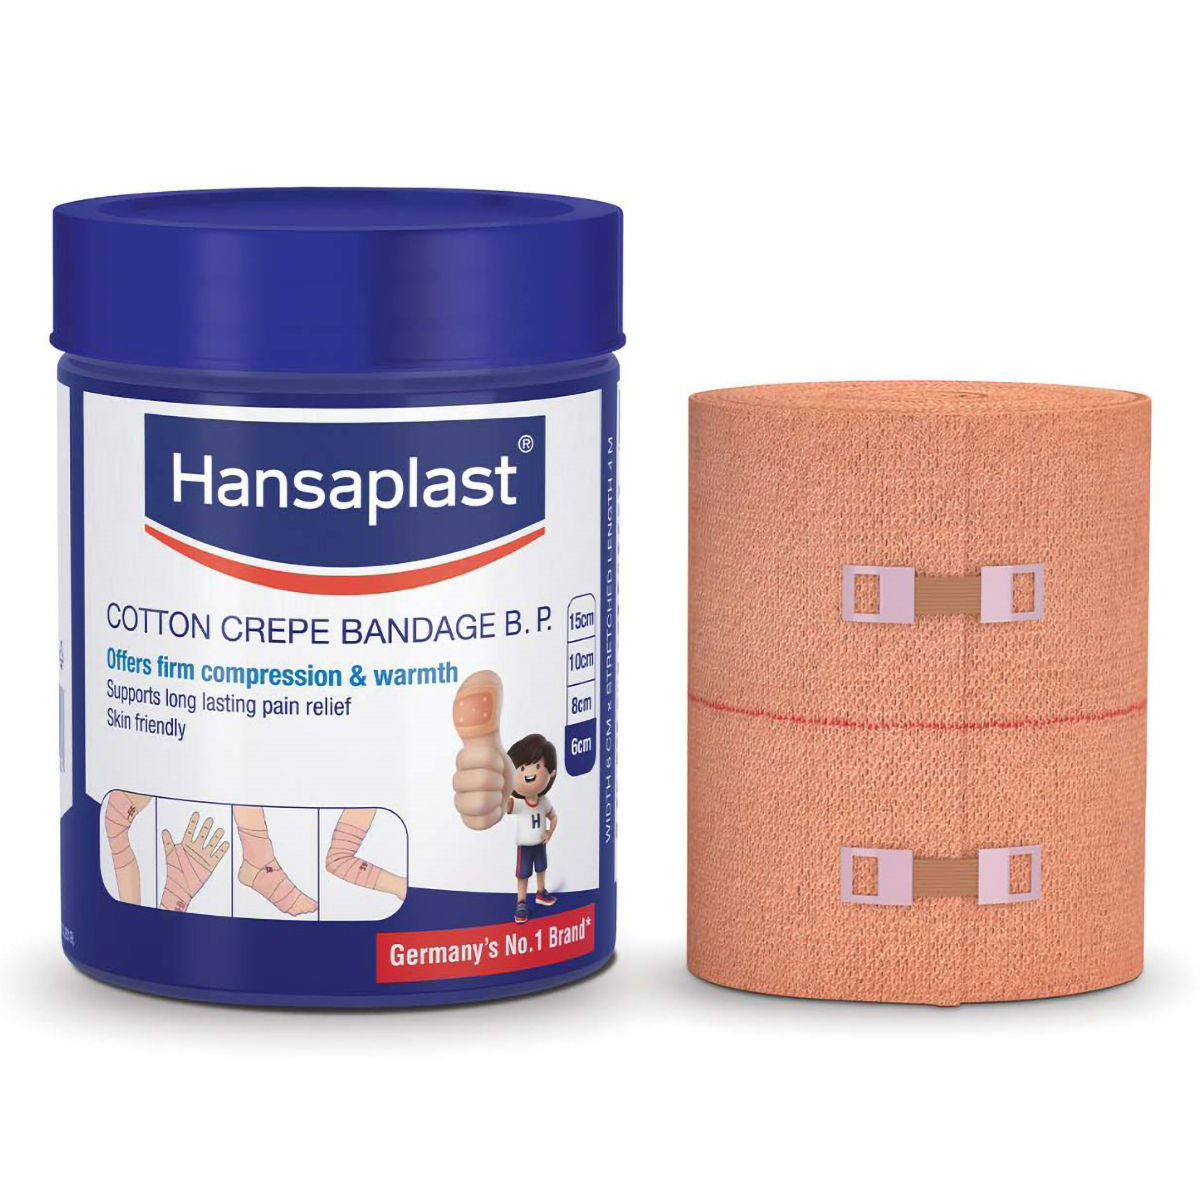 Buy Hansaplast Cotton Crepe Bandage B.P. 6 cm x 4 m, 1 Count Online